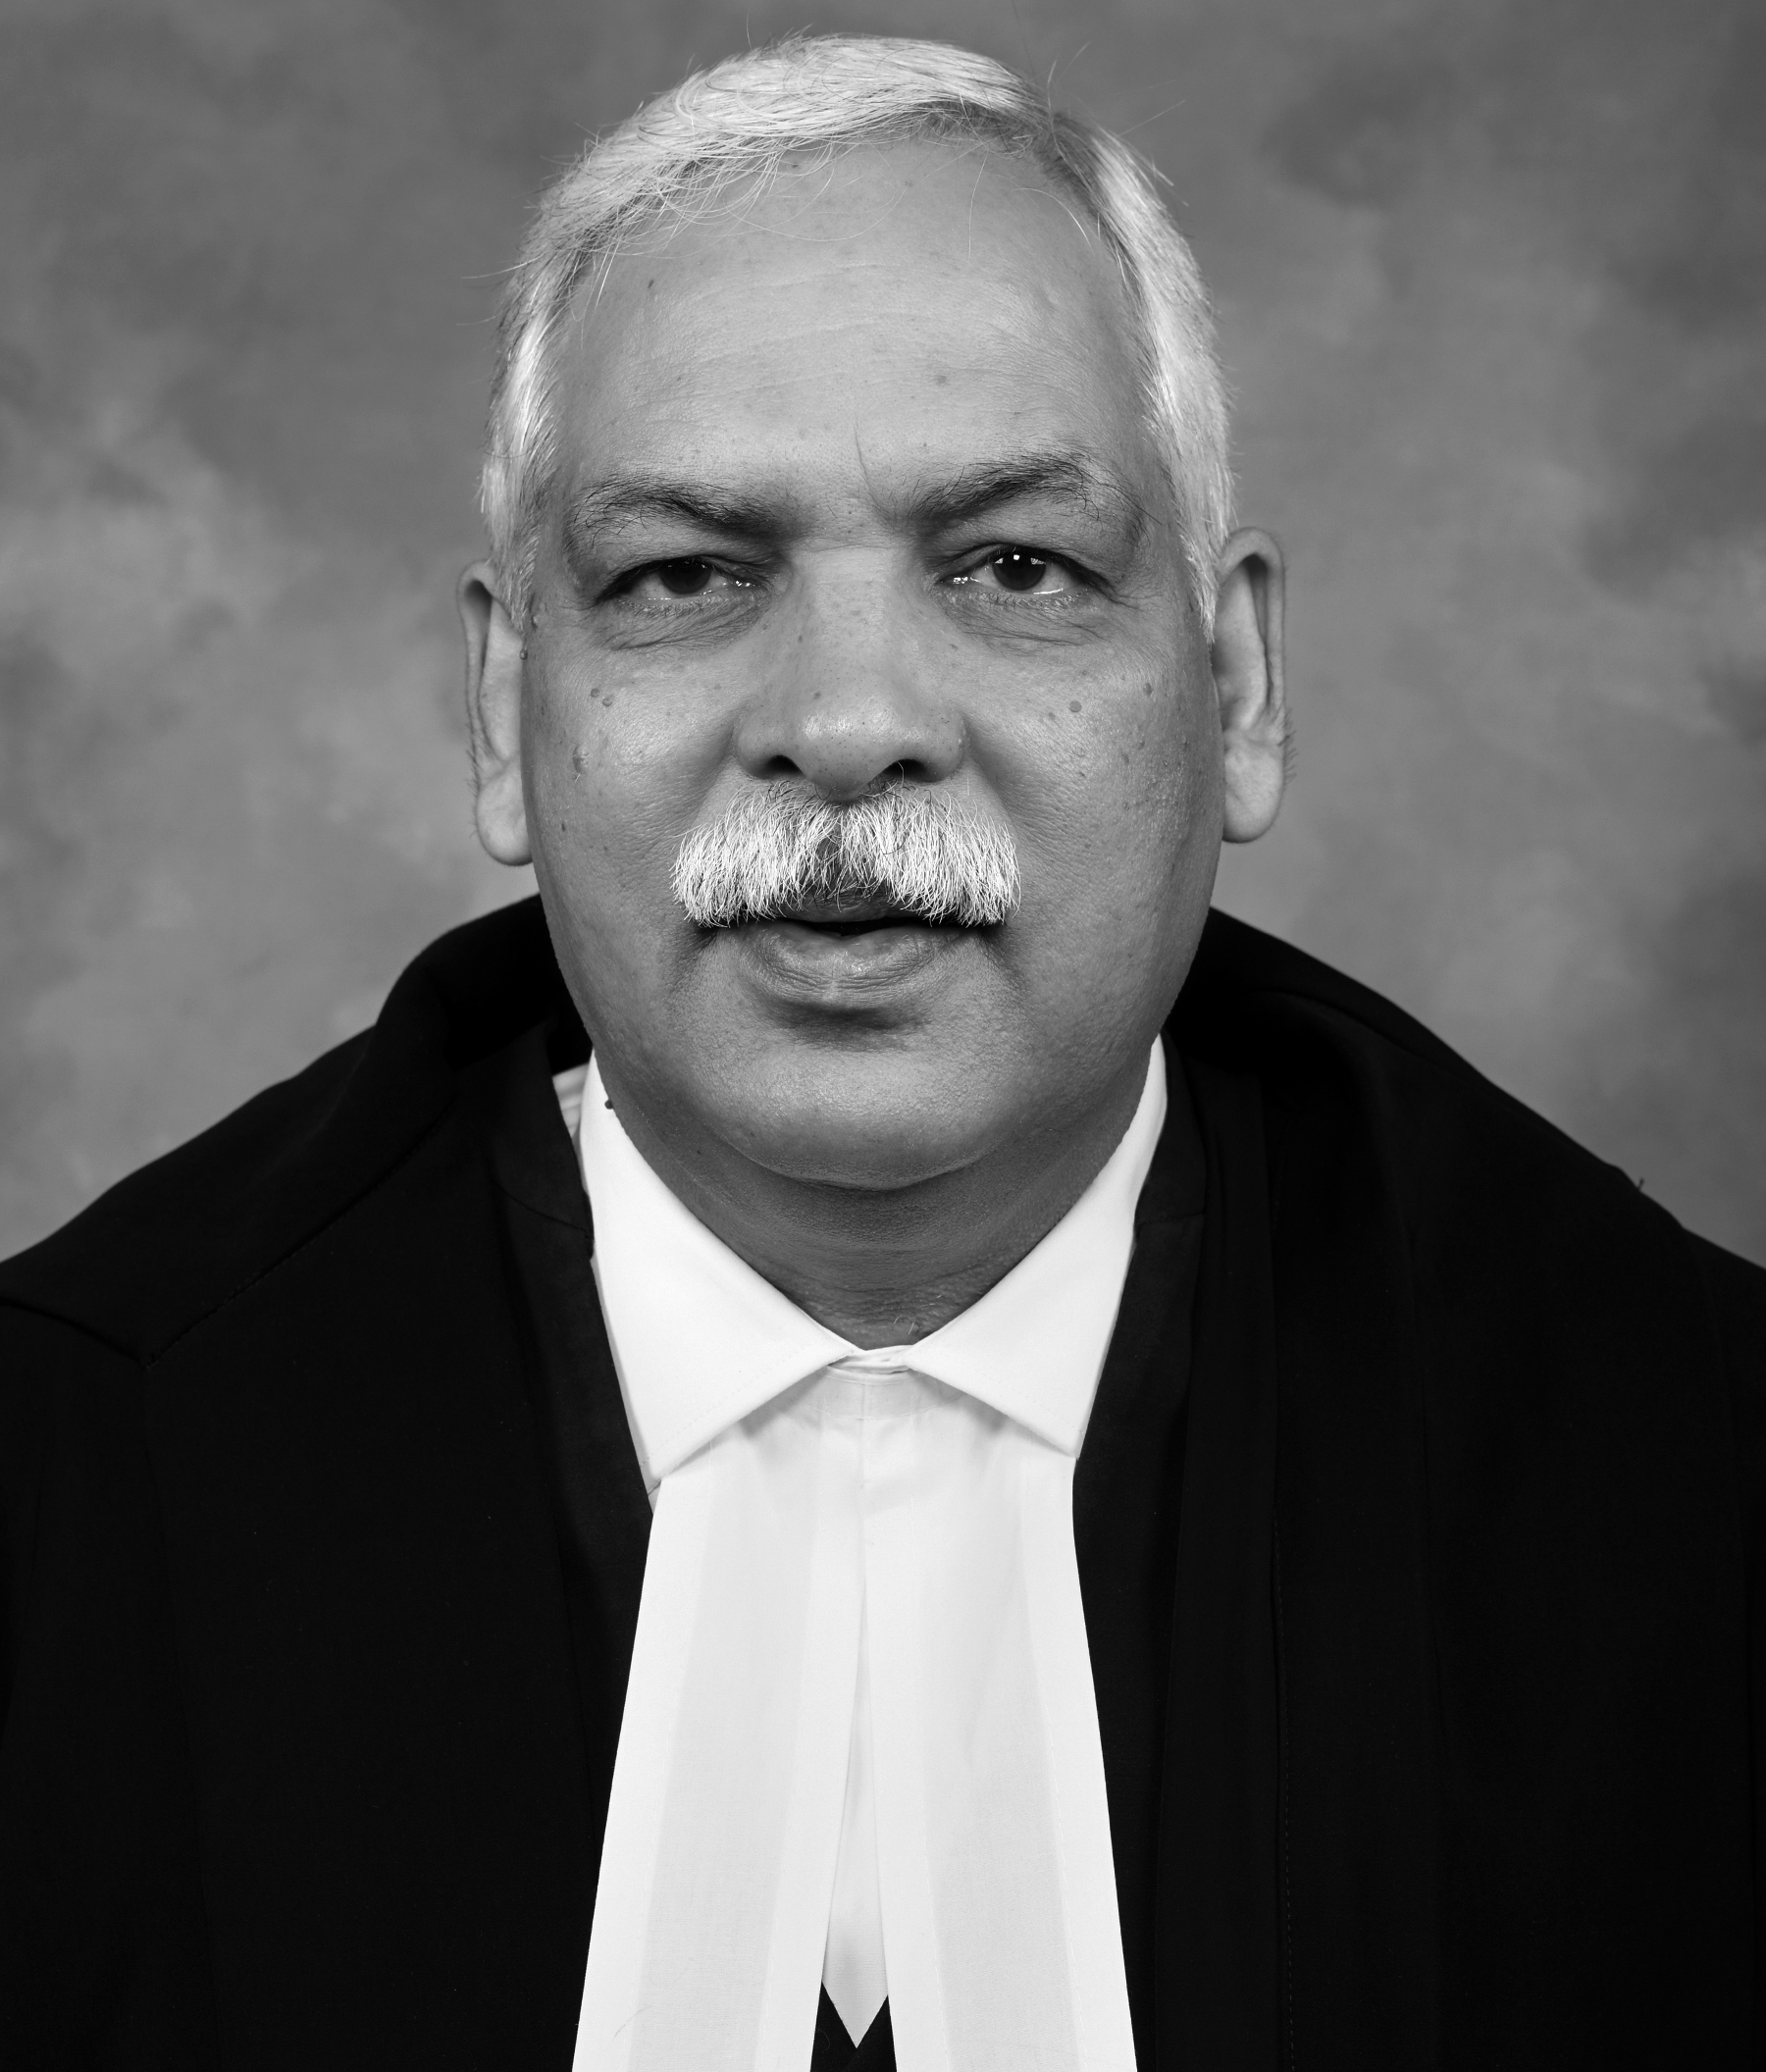 देवेंद्र कुमार उपाध्याय, मुख्य न्यायाधीश.